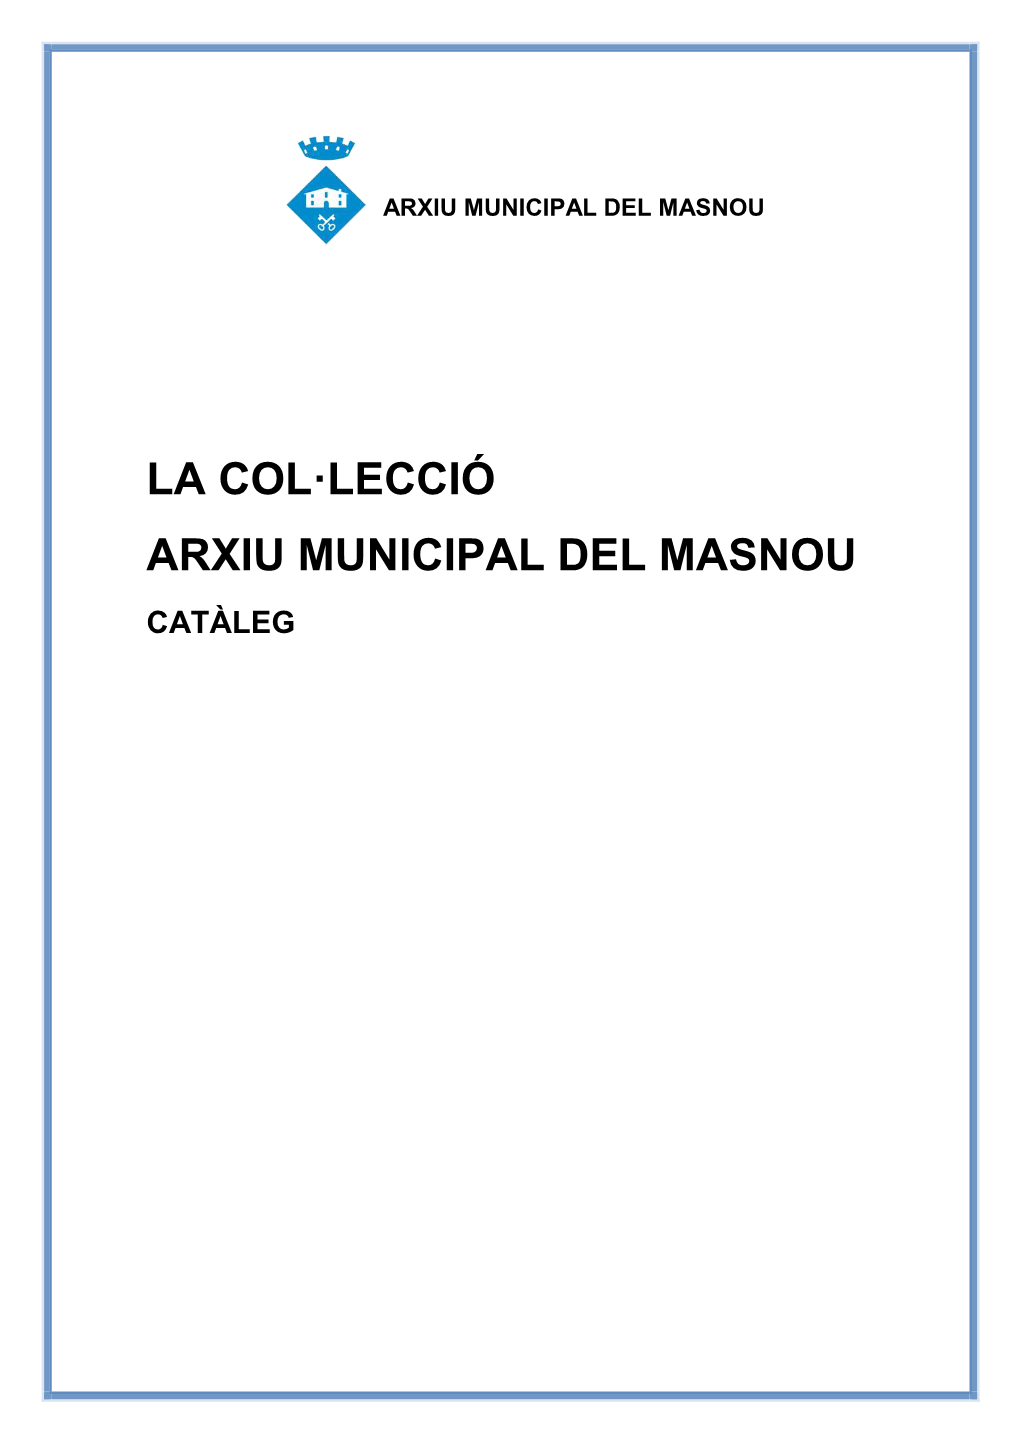 Col·Lecció De L'arxiu Municipal Del Masnou